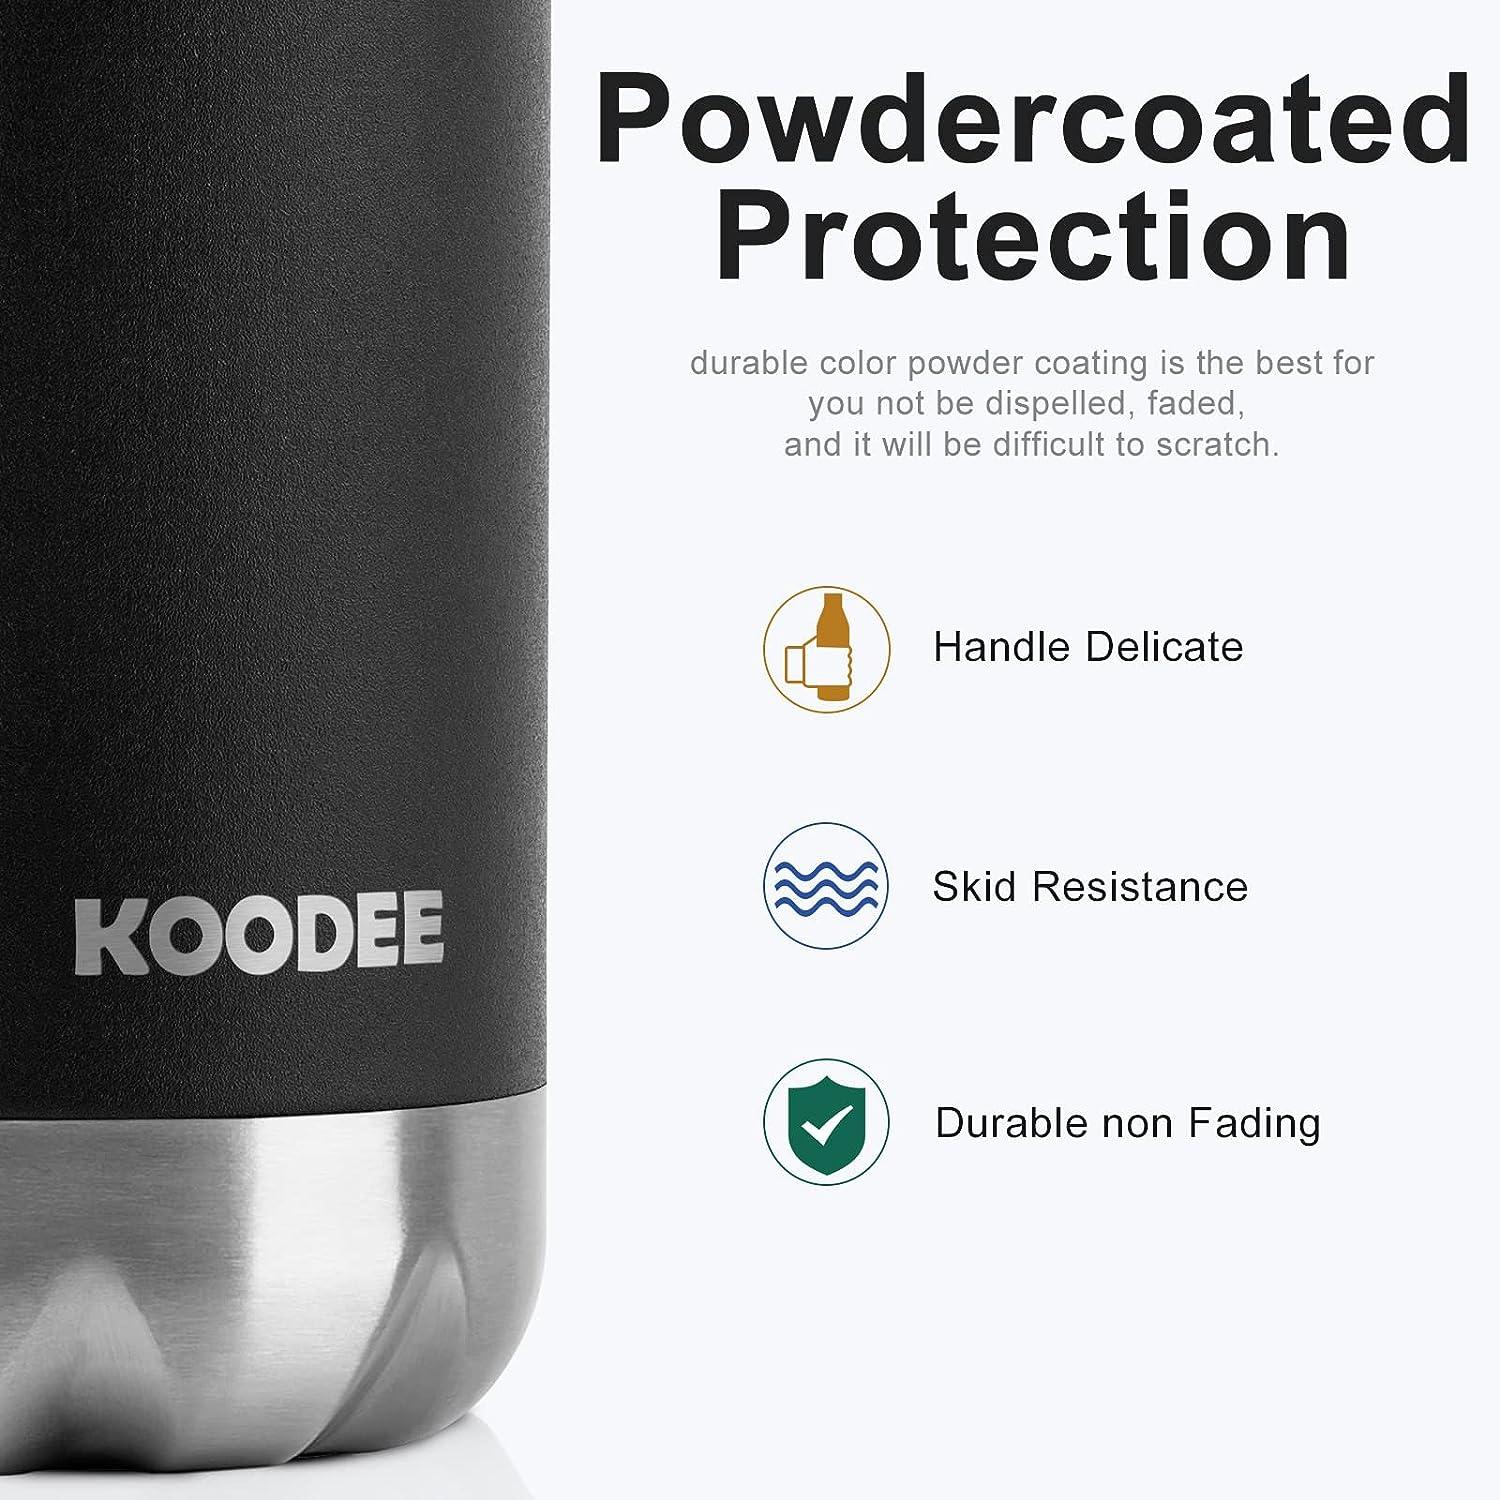 koodee Kids Water Bottle 16 oz Stainless Steel Triple Wall Vacuum